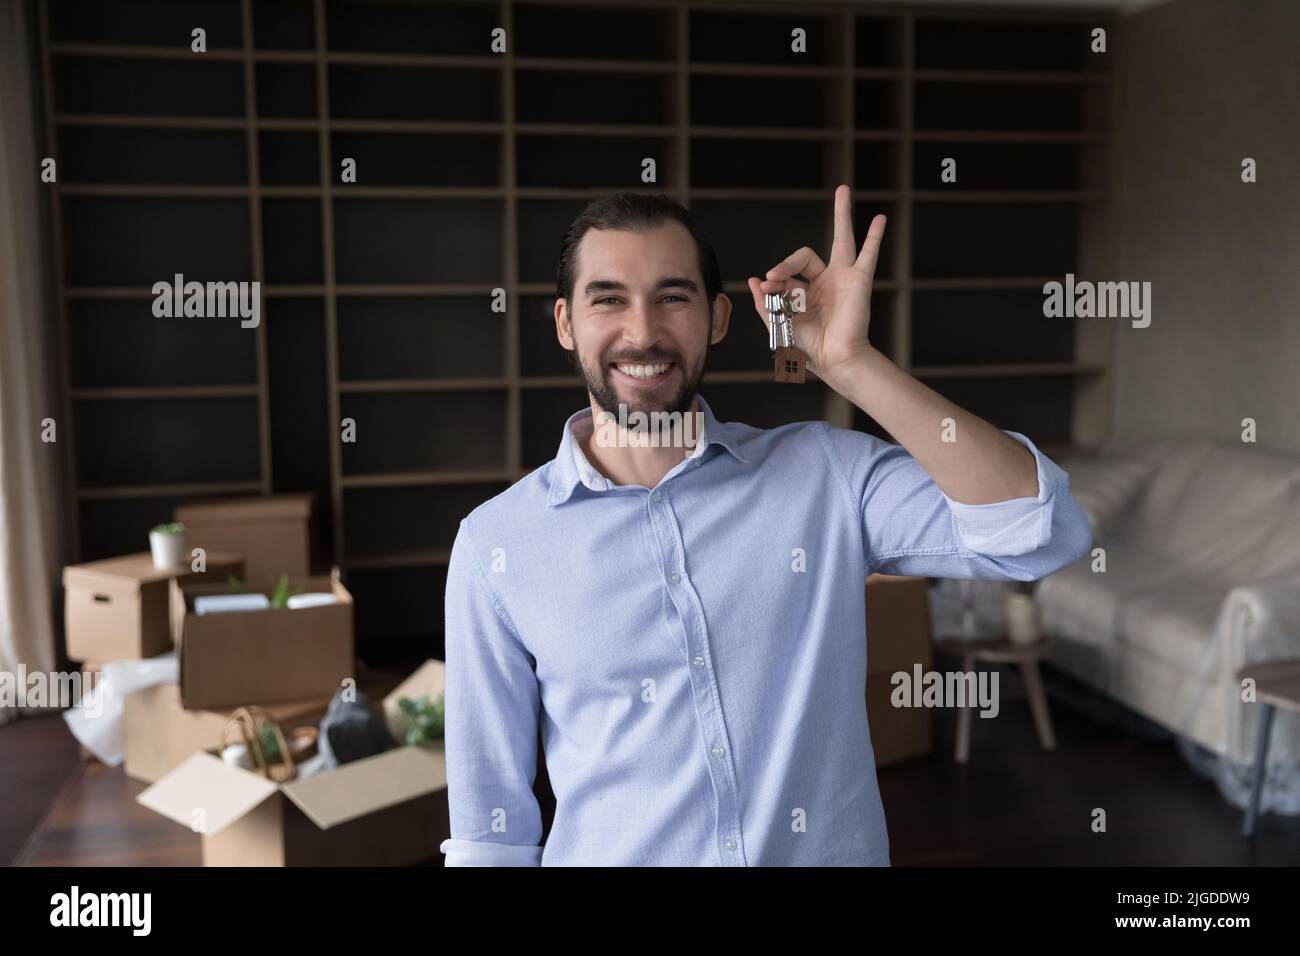 Happy proud house buyer man shaking, holding keys Stock Photo